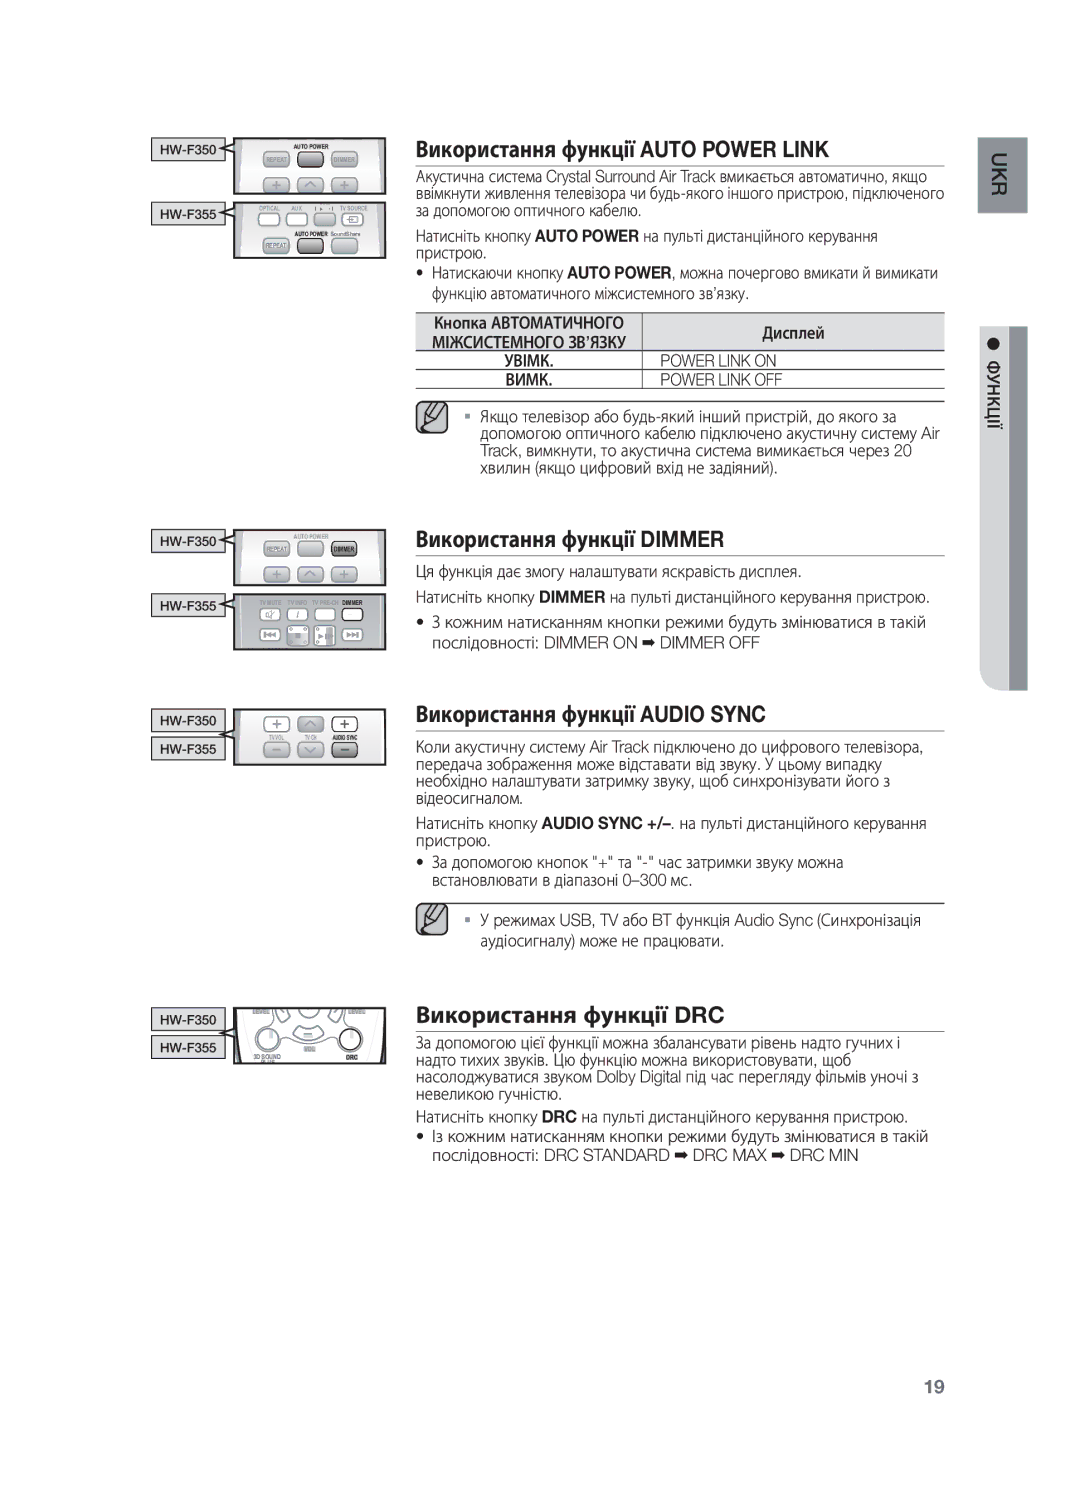 Samsung HW-F350/RU Використання функції Auto Power Link, Використання функції Dimmer, Використання функції Audio Sync 